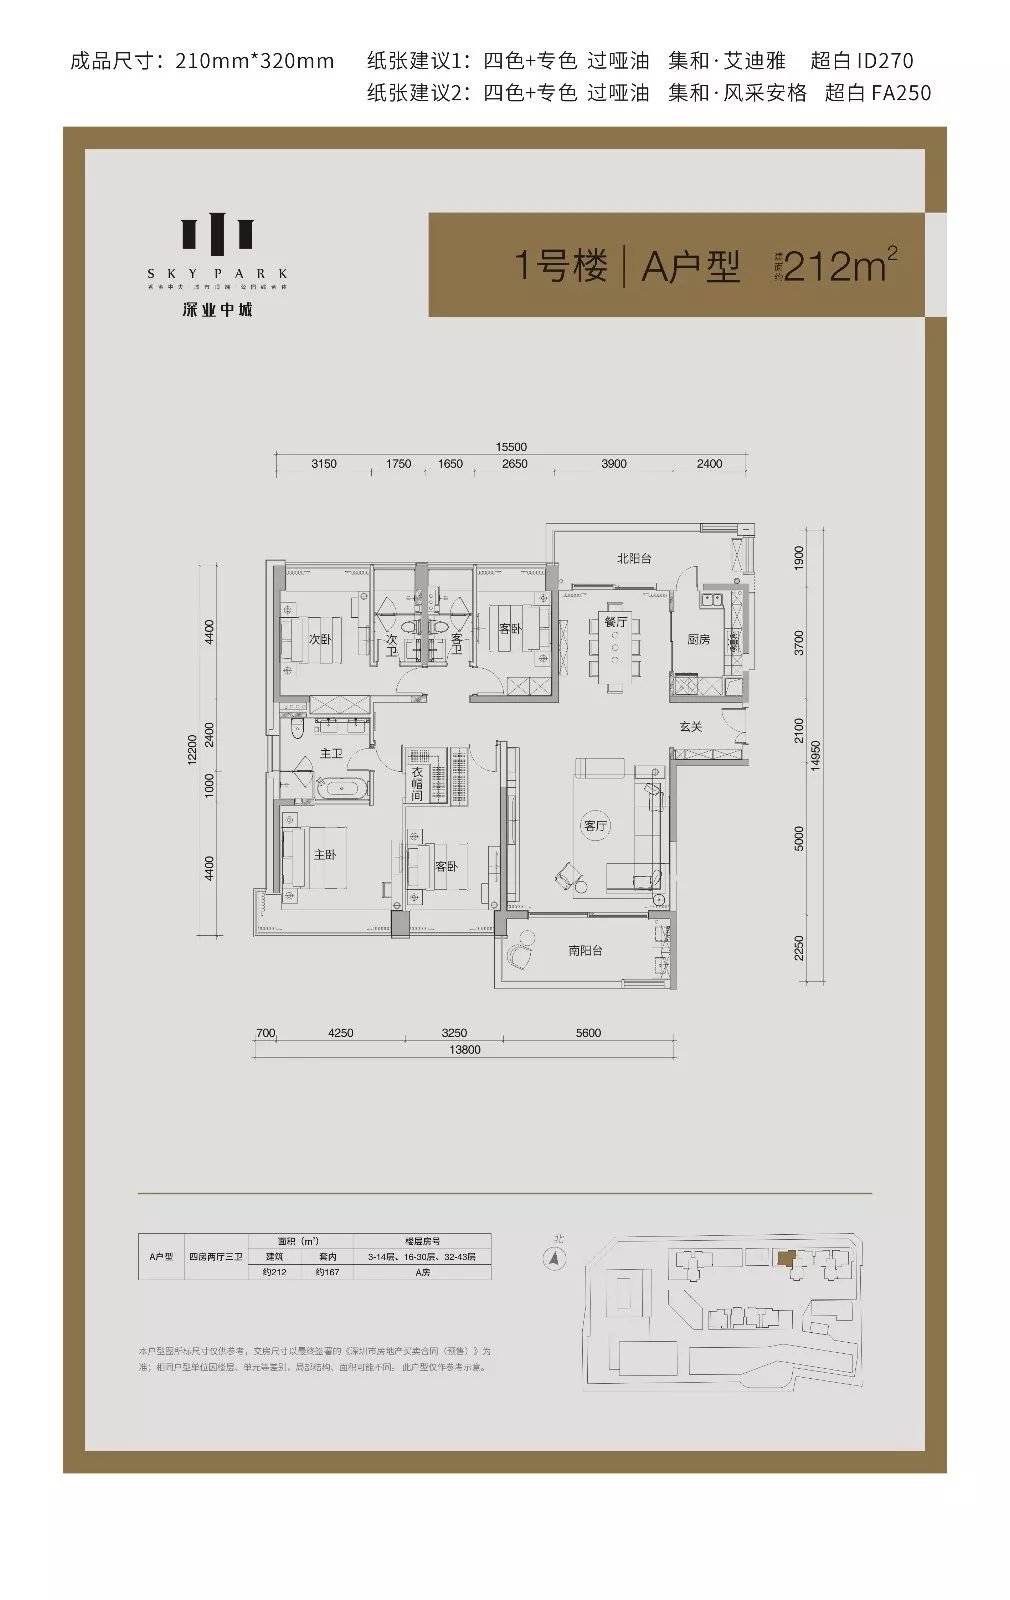 搜狐焦点拿到了本次深业中城(一期)住宅户型图,目前推出的2,3栋共5种